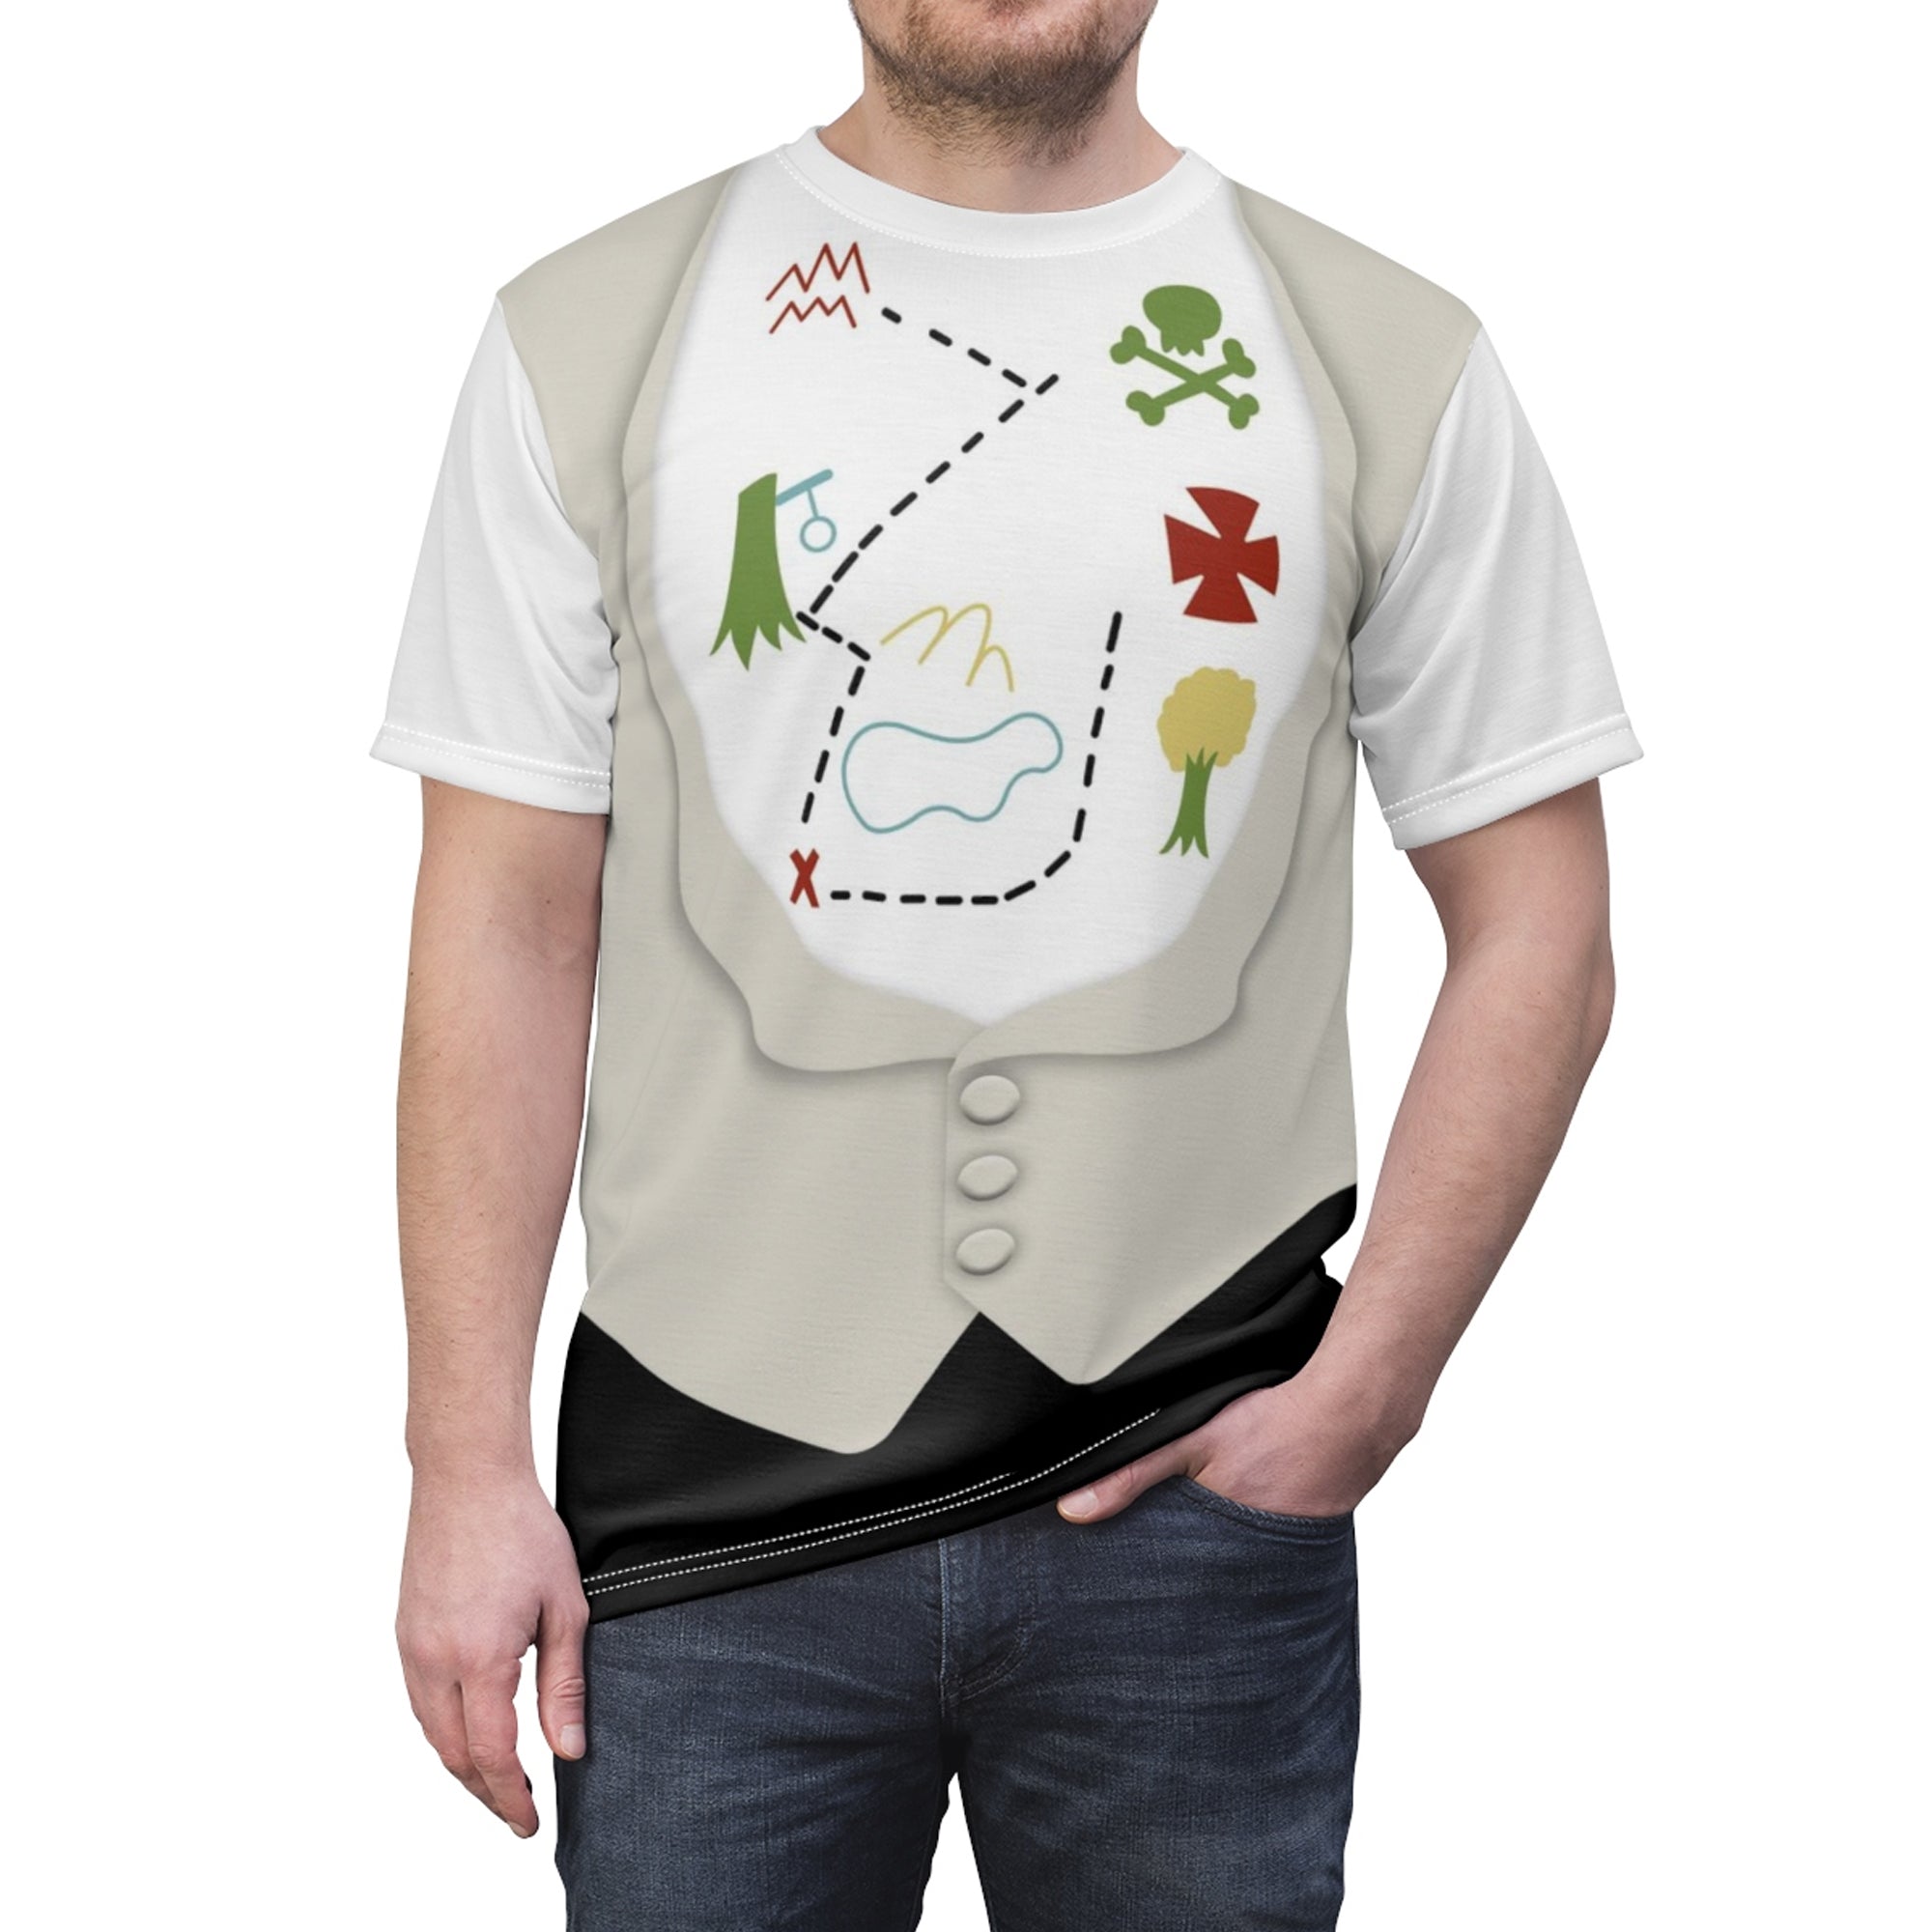 Mr. Darling Peter Pan Costume T-Shirt